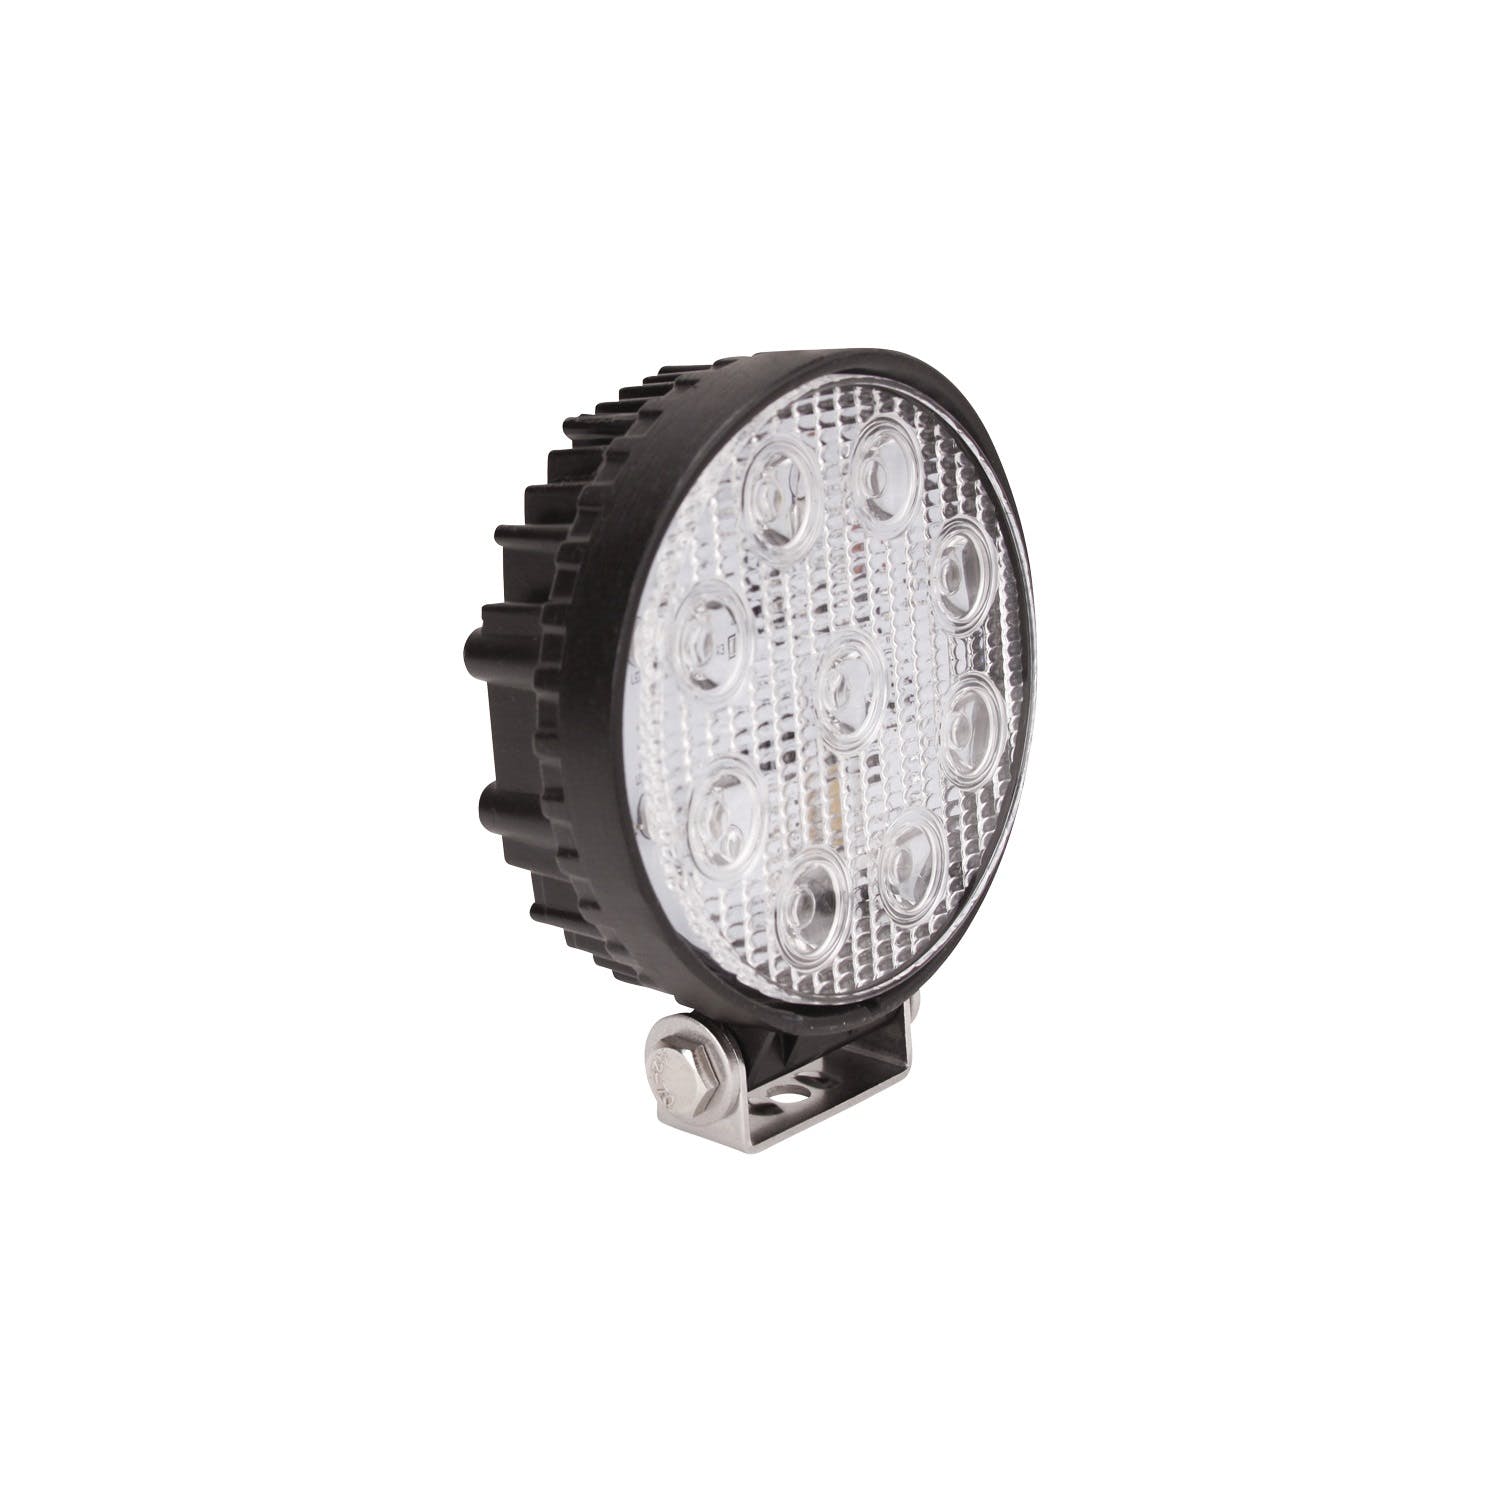 Westin Automotive 09-12006A LED Work Utility Light Round 5 inch Spot with 3W Epistar